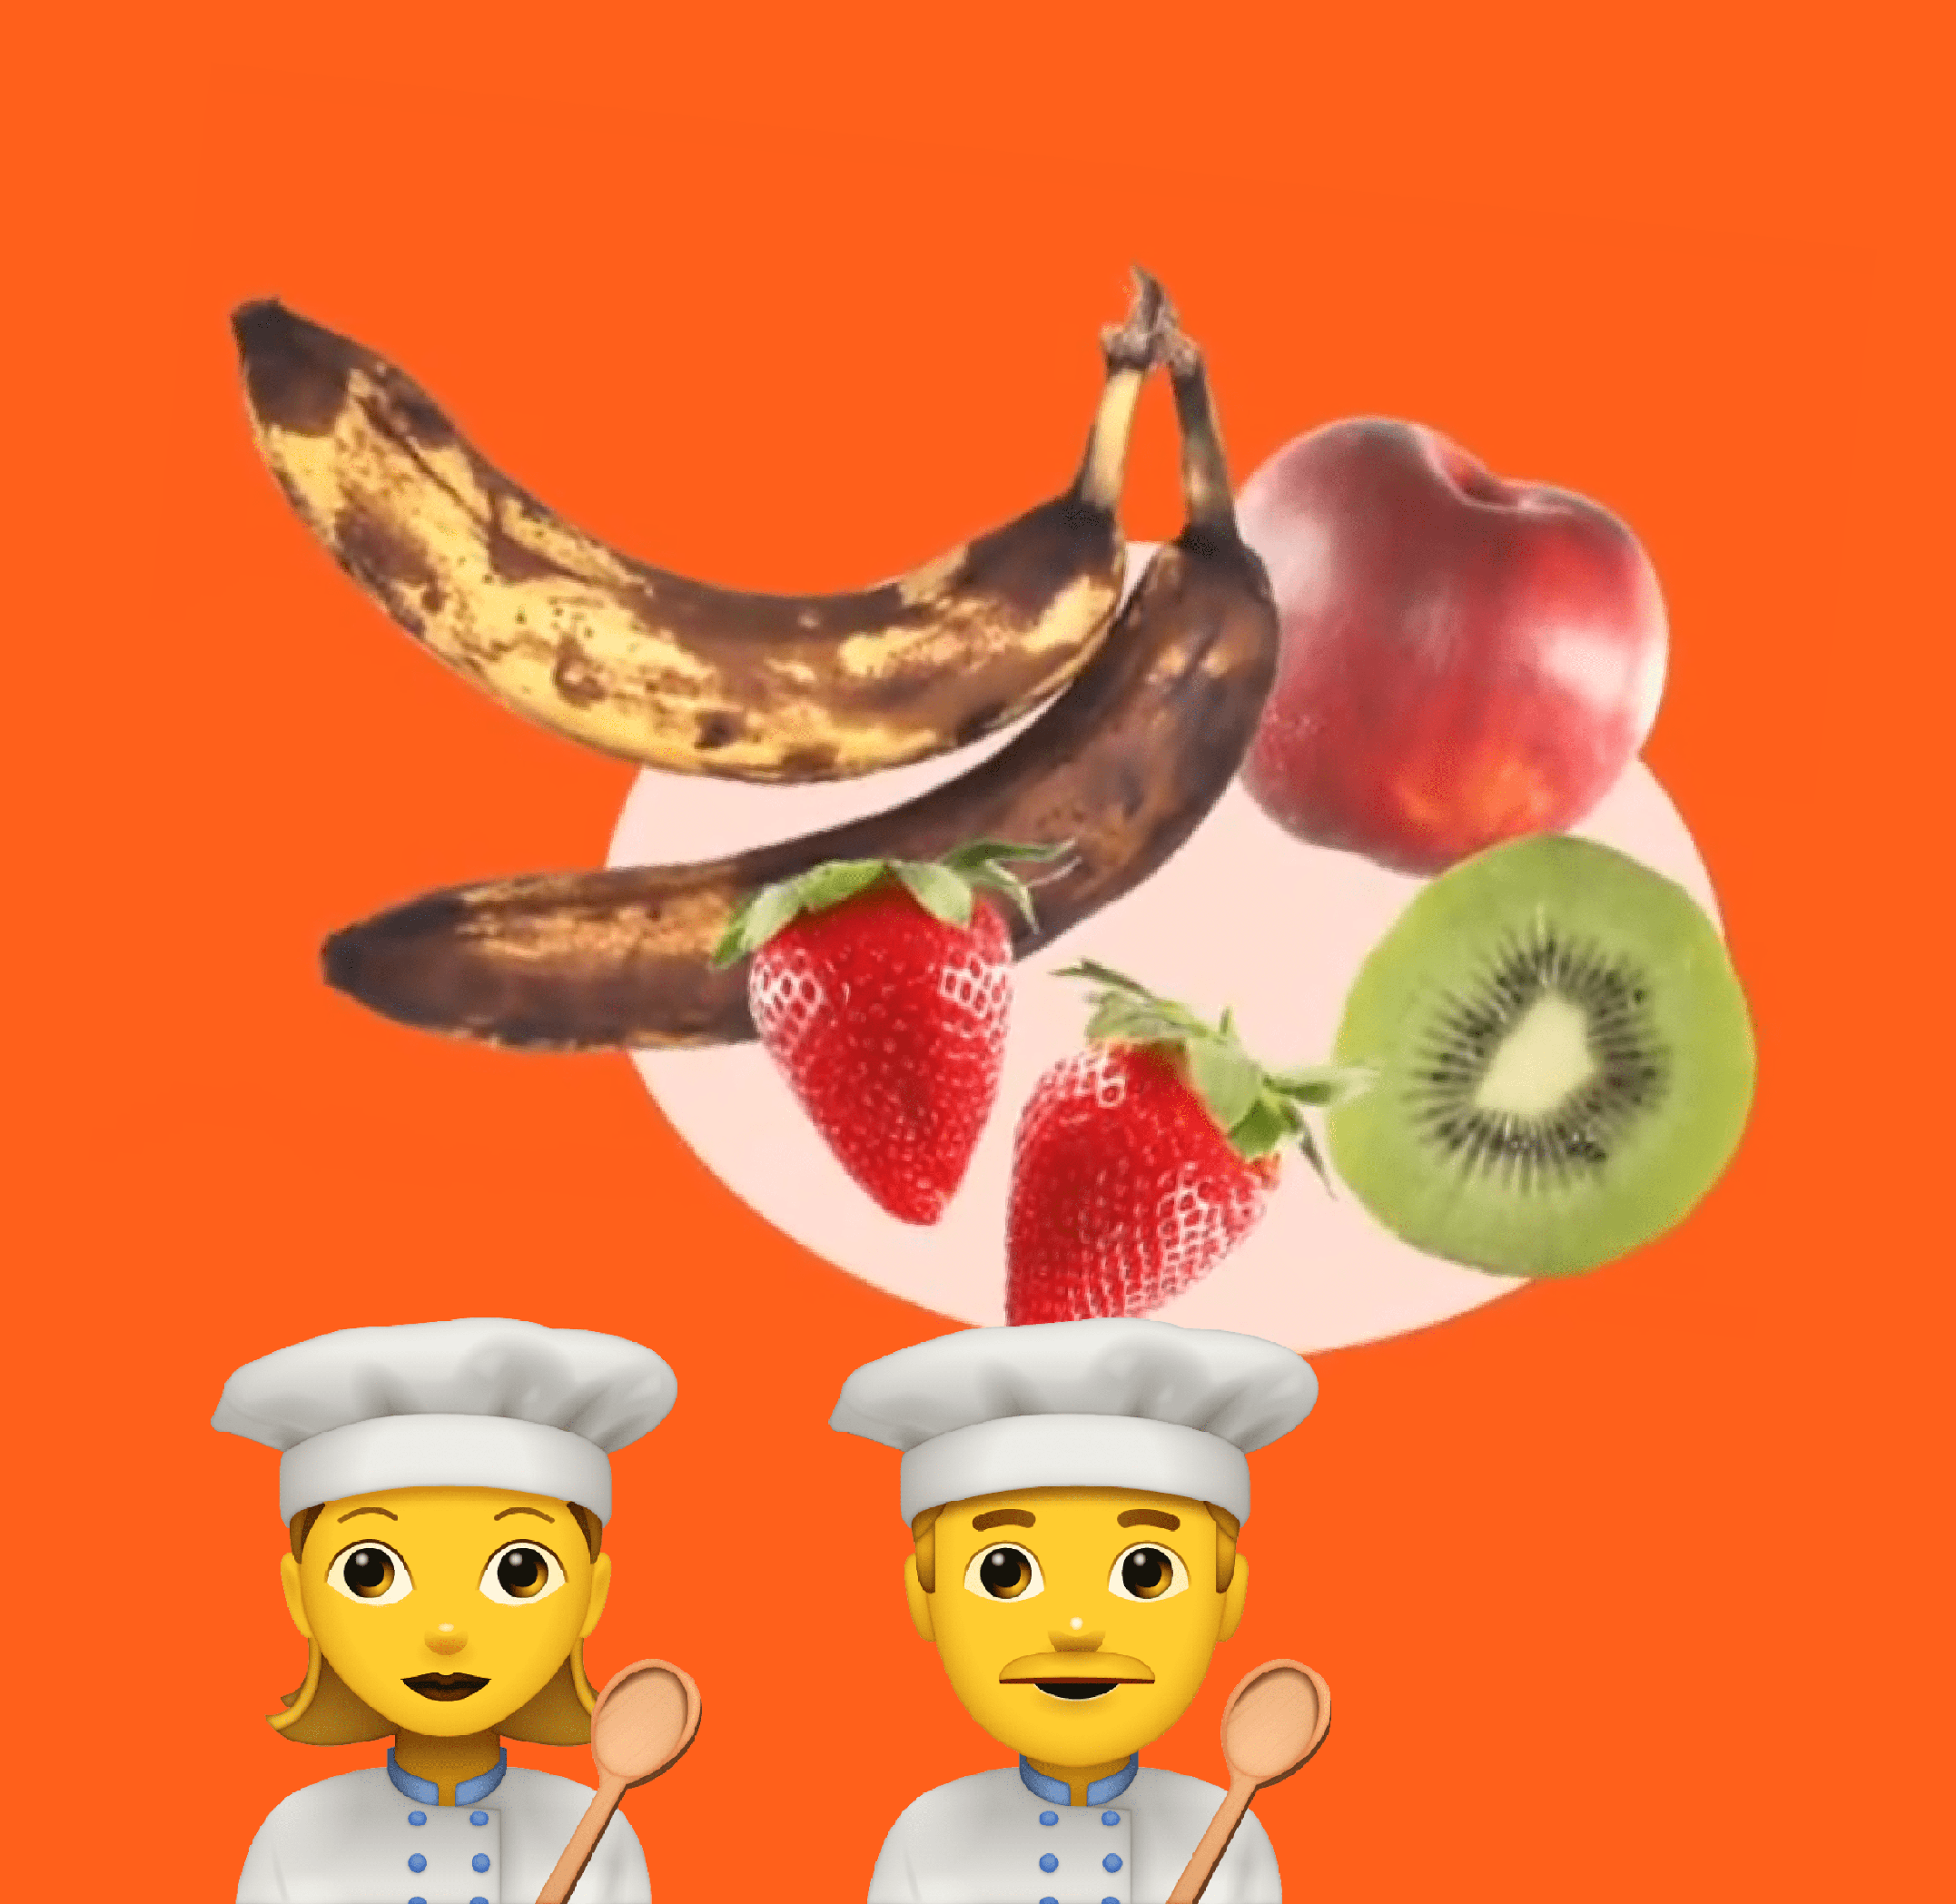 En illustrerad bild med två kockar-emojis och olika frukt i mitten av bilden.